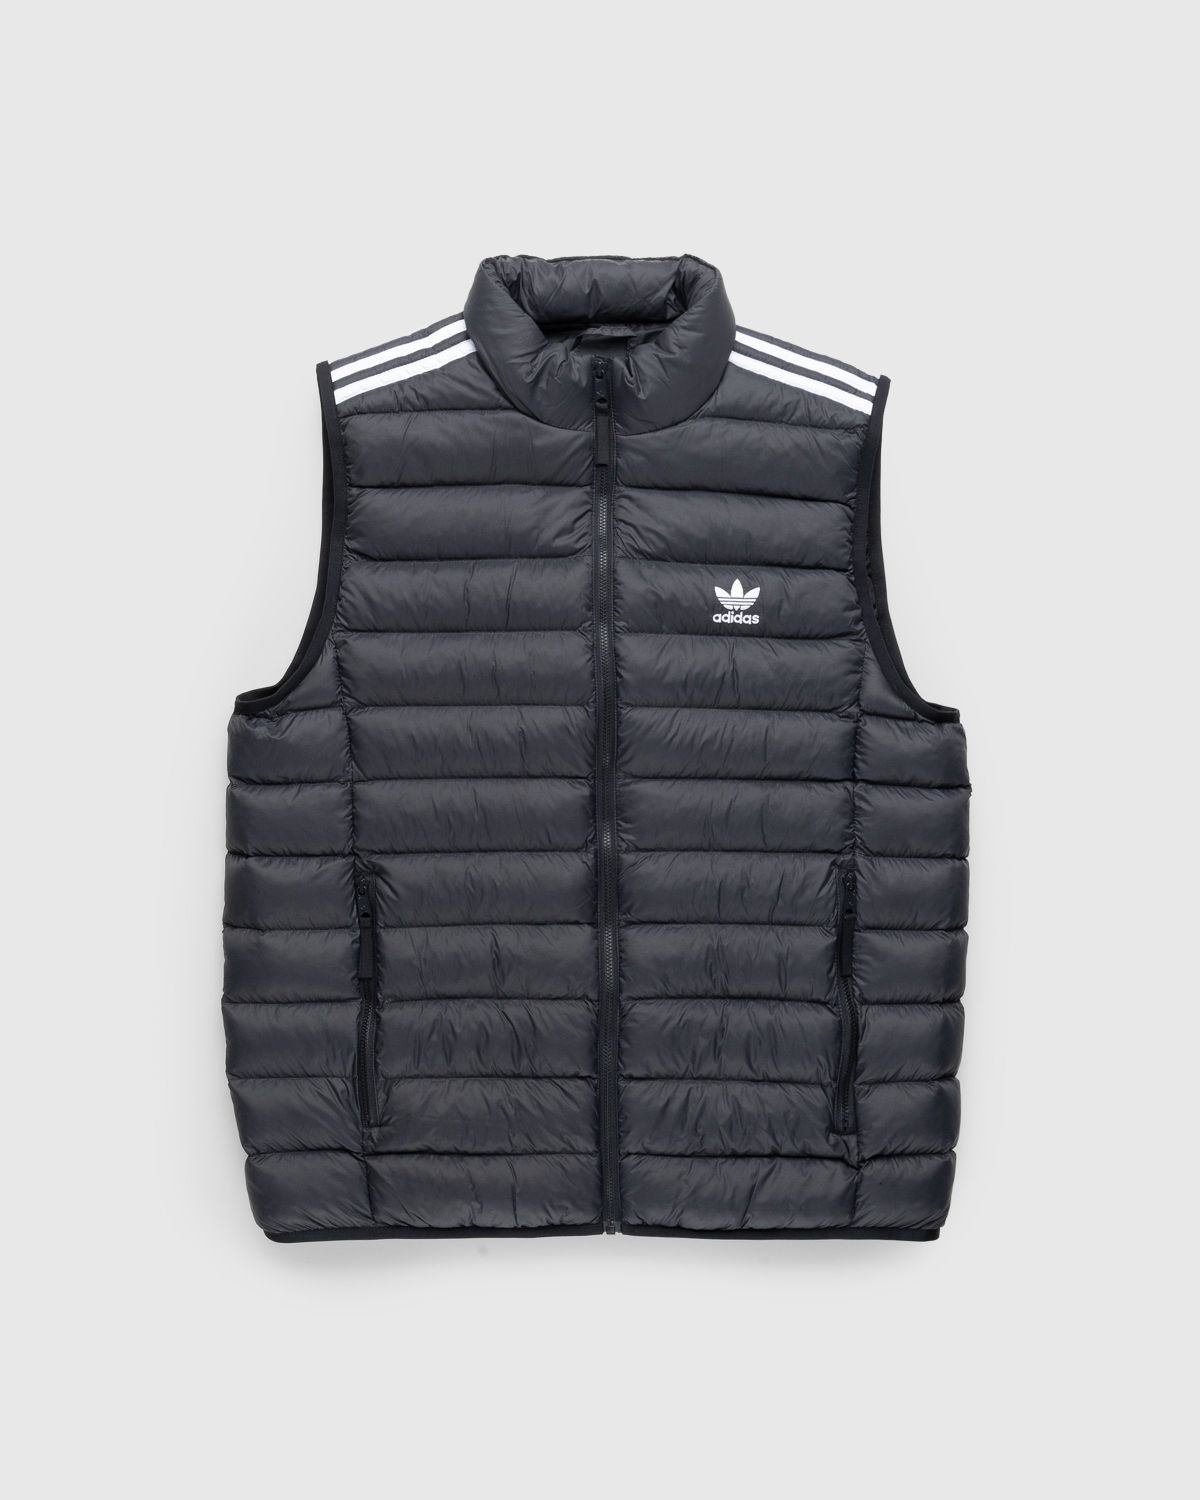 Adidas – Padded Vest Black/White Highsnobiety Shop 